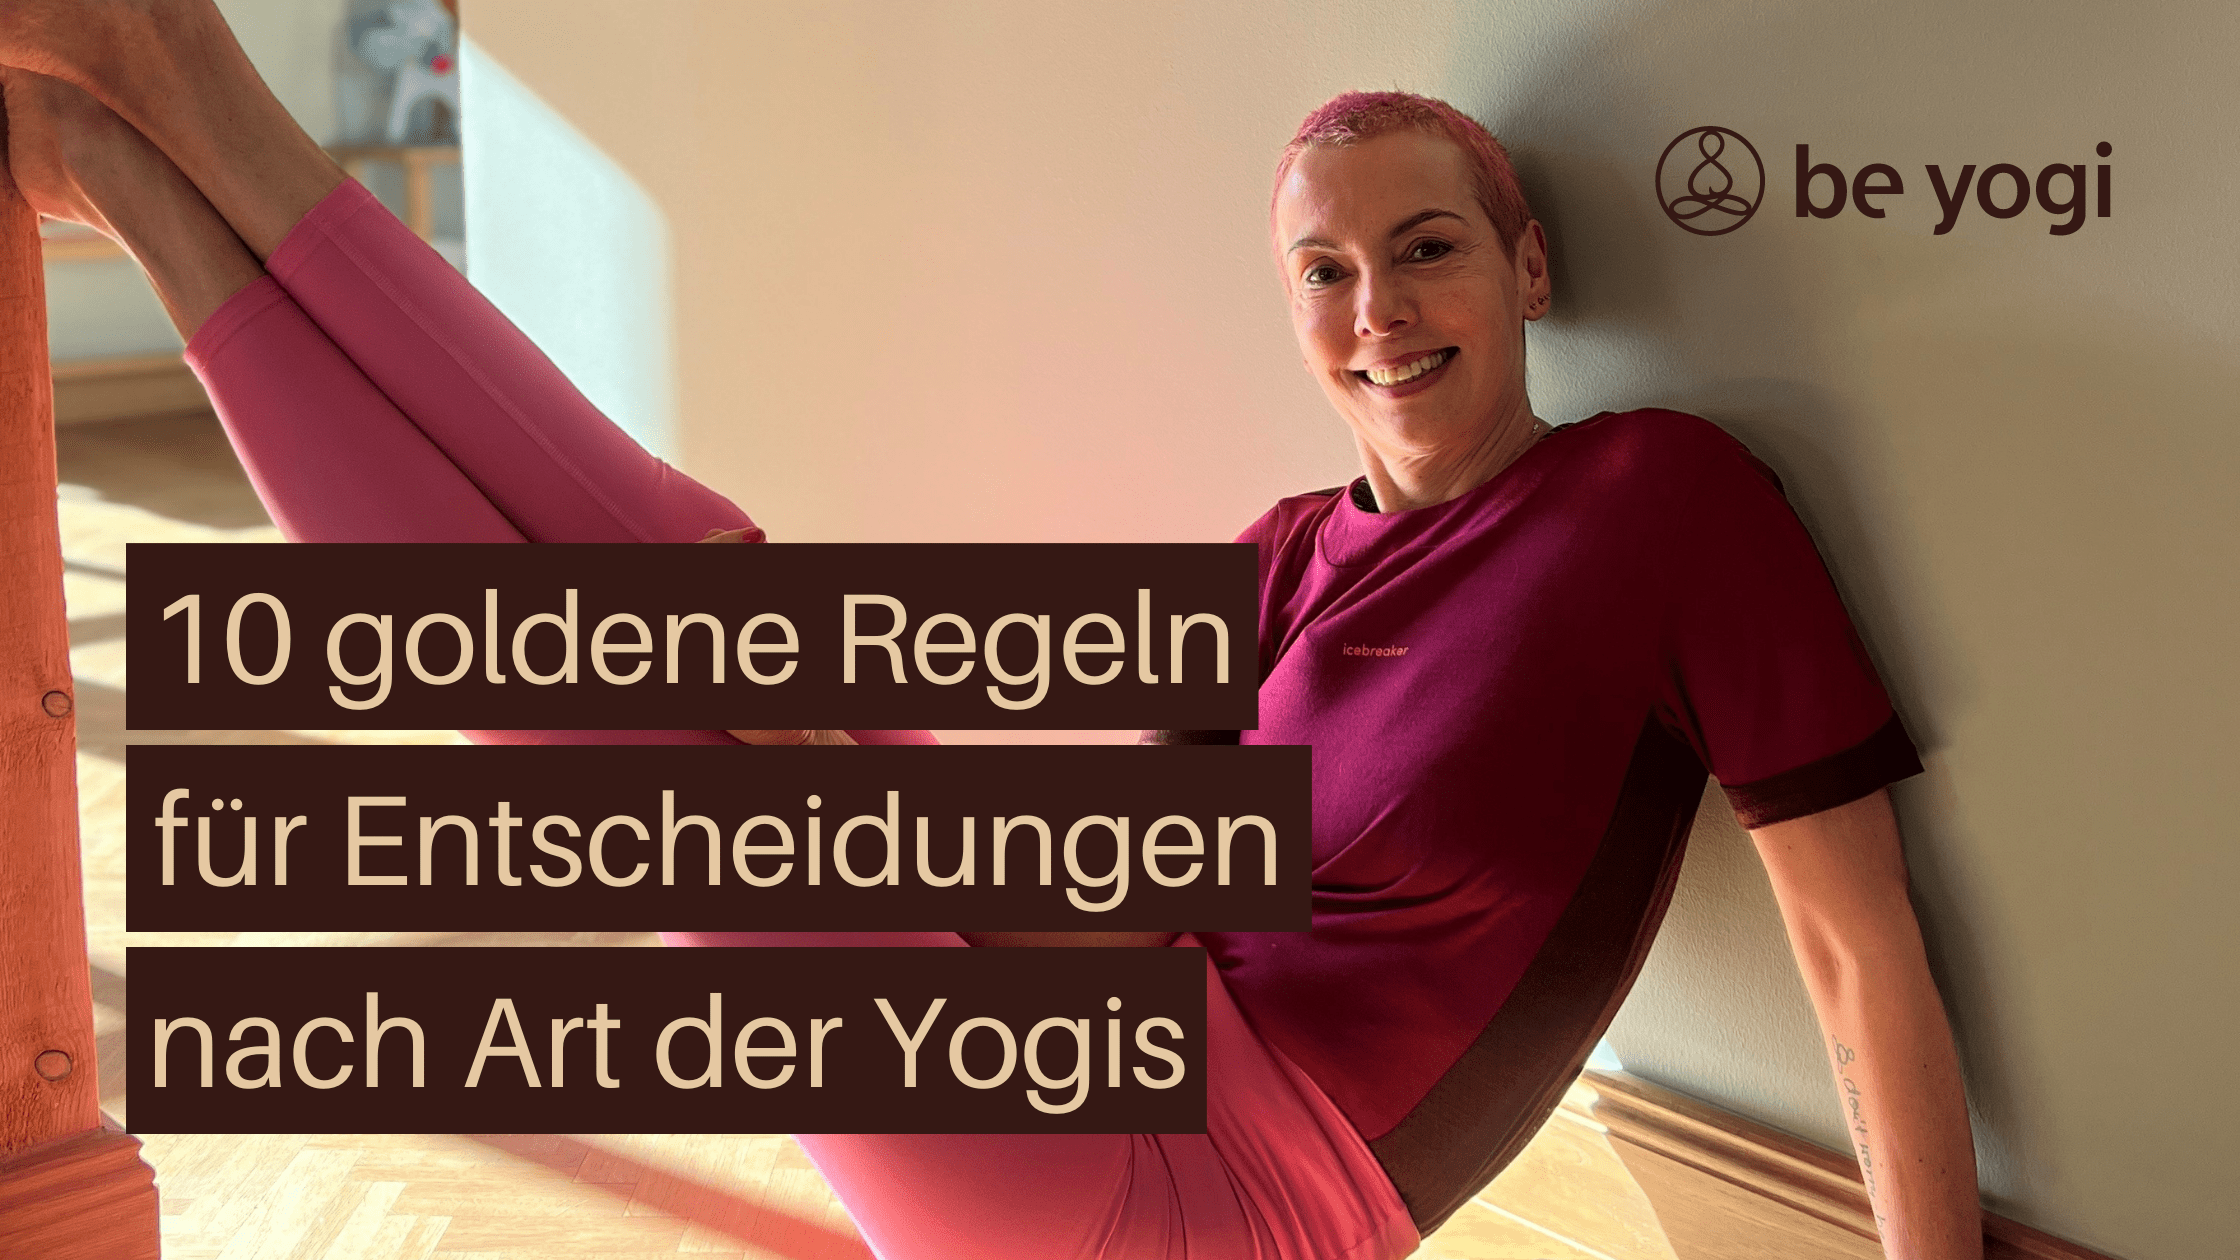 10 goldene Regeln für Entscheidungen nach Art der Yogis Artikel Yoga Ayurveda Be Yogi